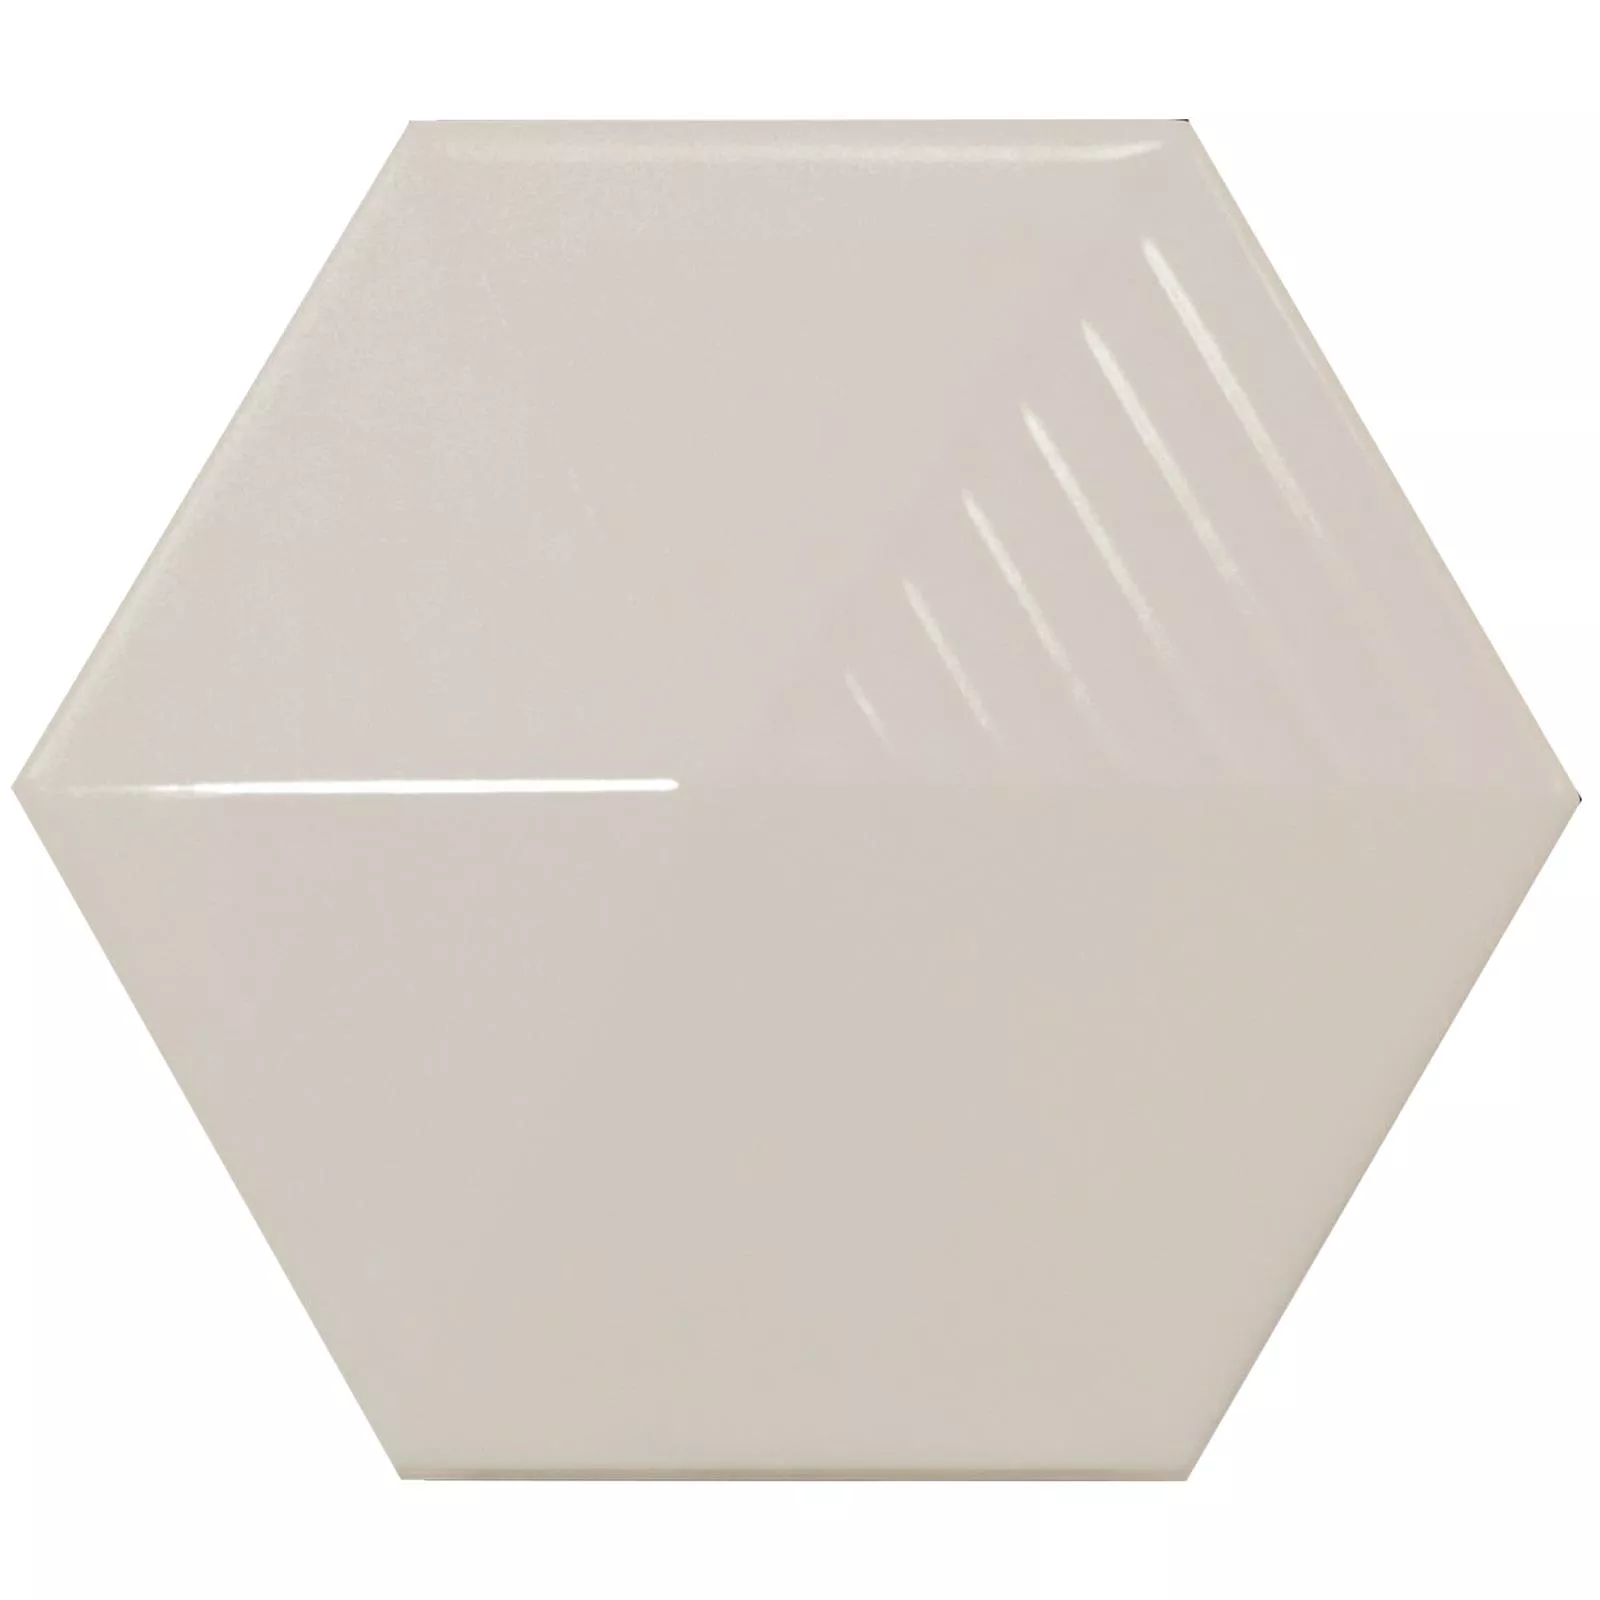 Muestra Revestimientos Rockford 3D Hexagonales 12,4x10,7cm Crema